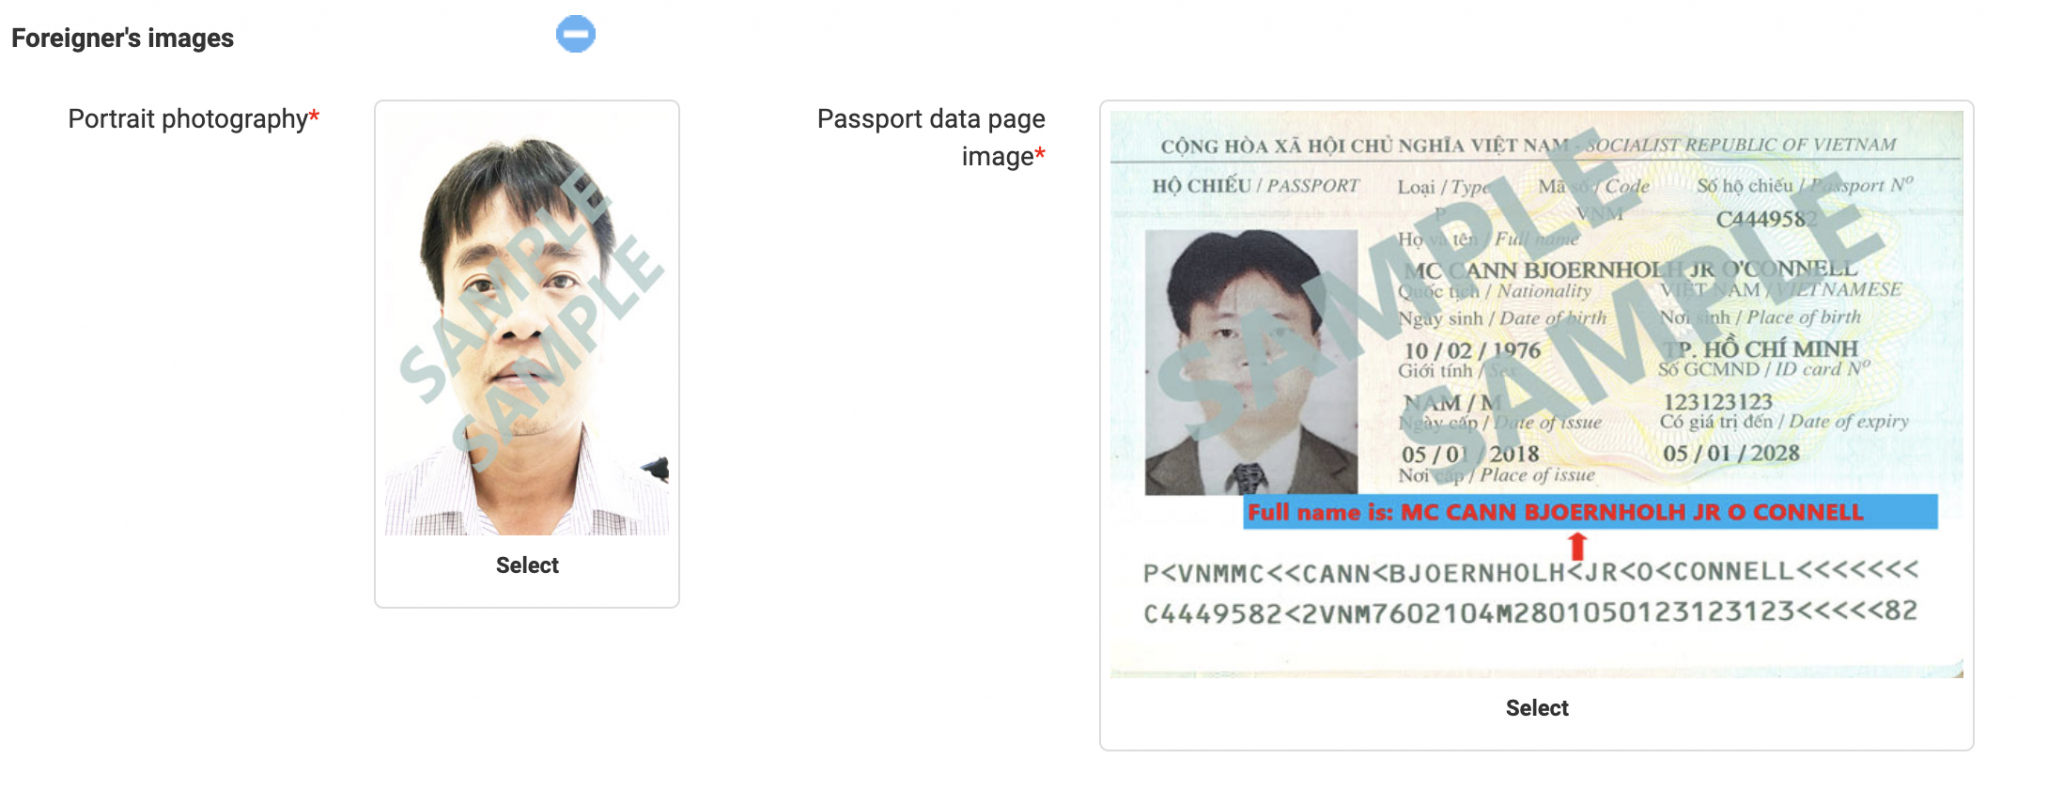 How To Make E Visa Application For Vietnam Detailed Guide 👉 🇻🇳 2570